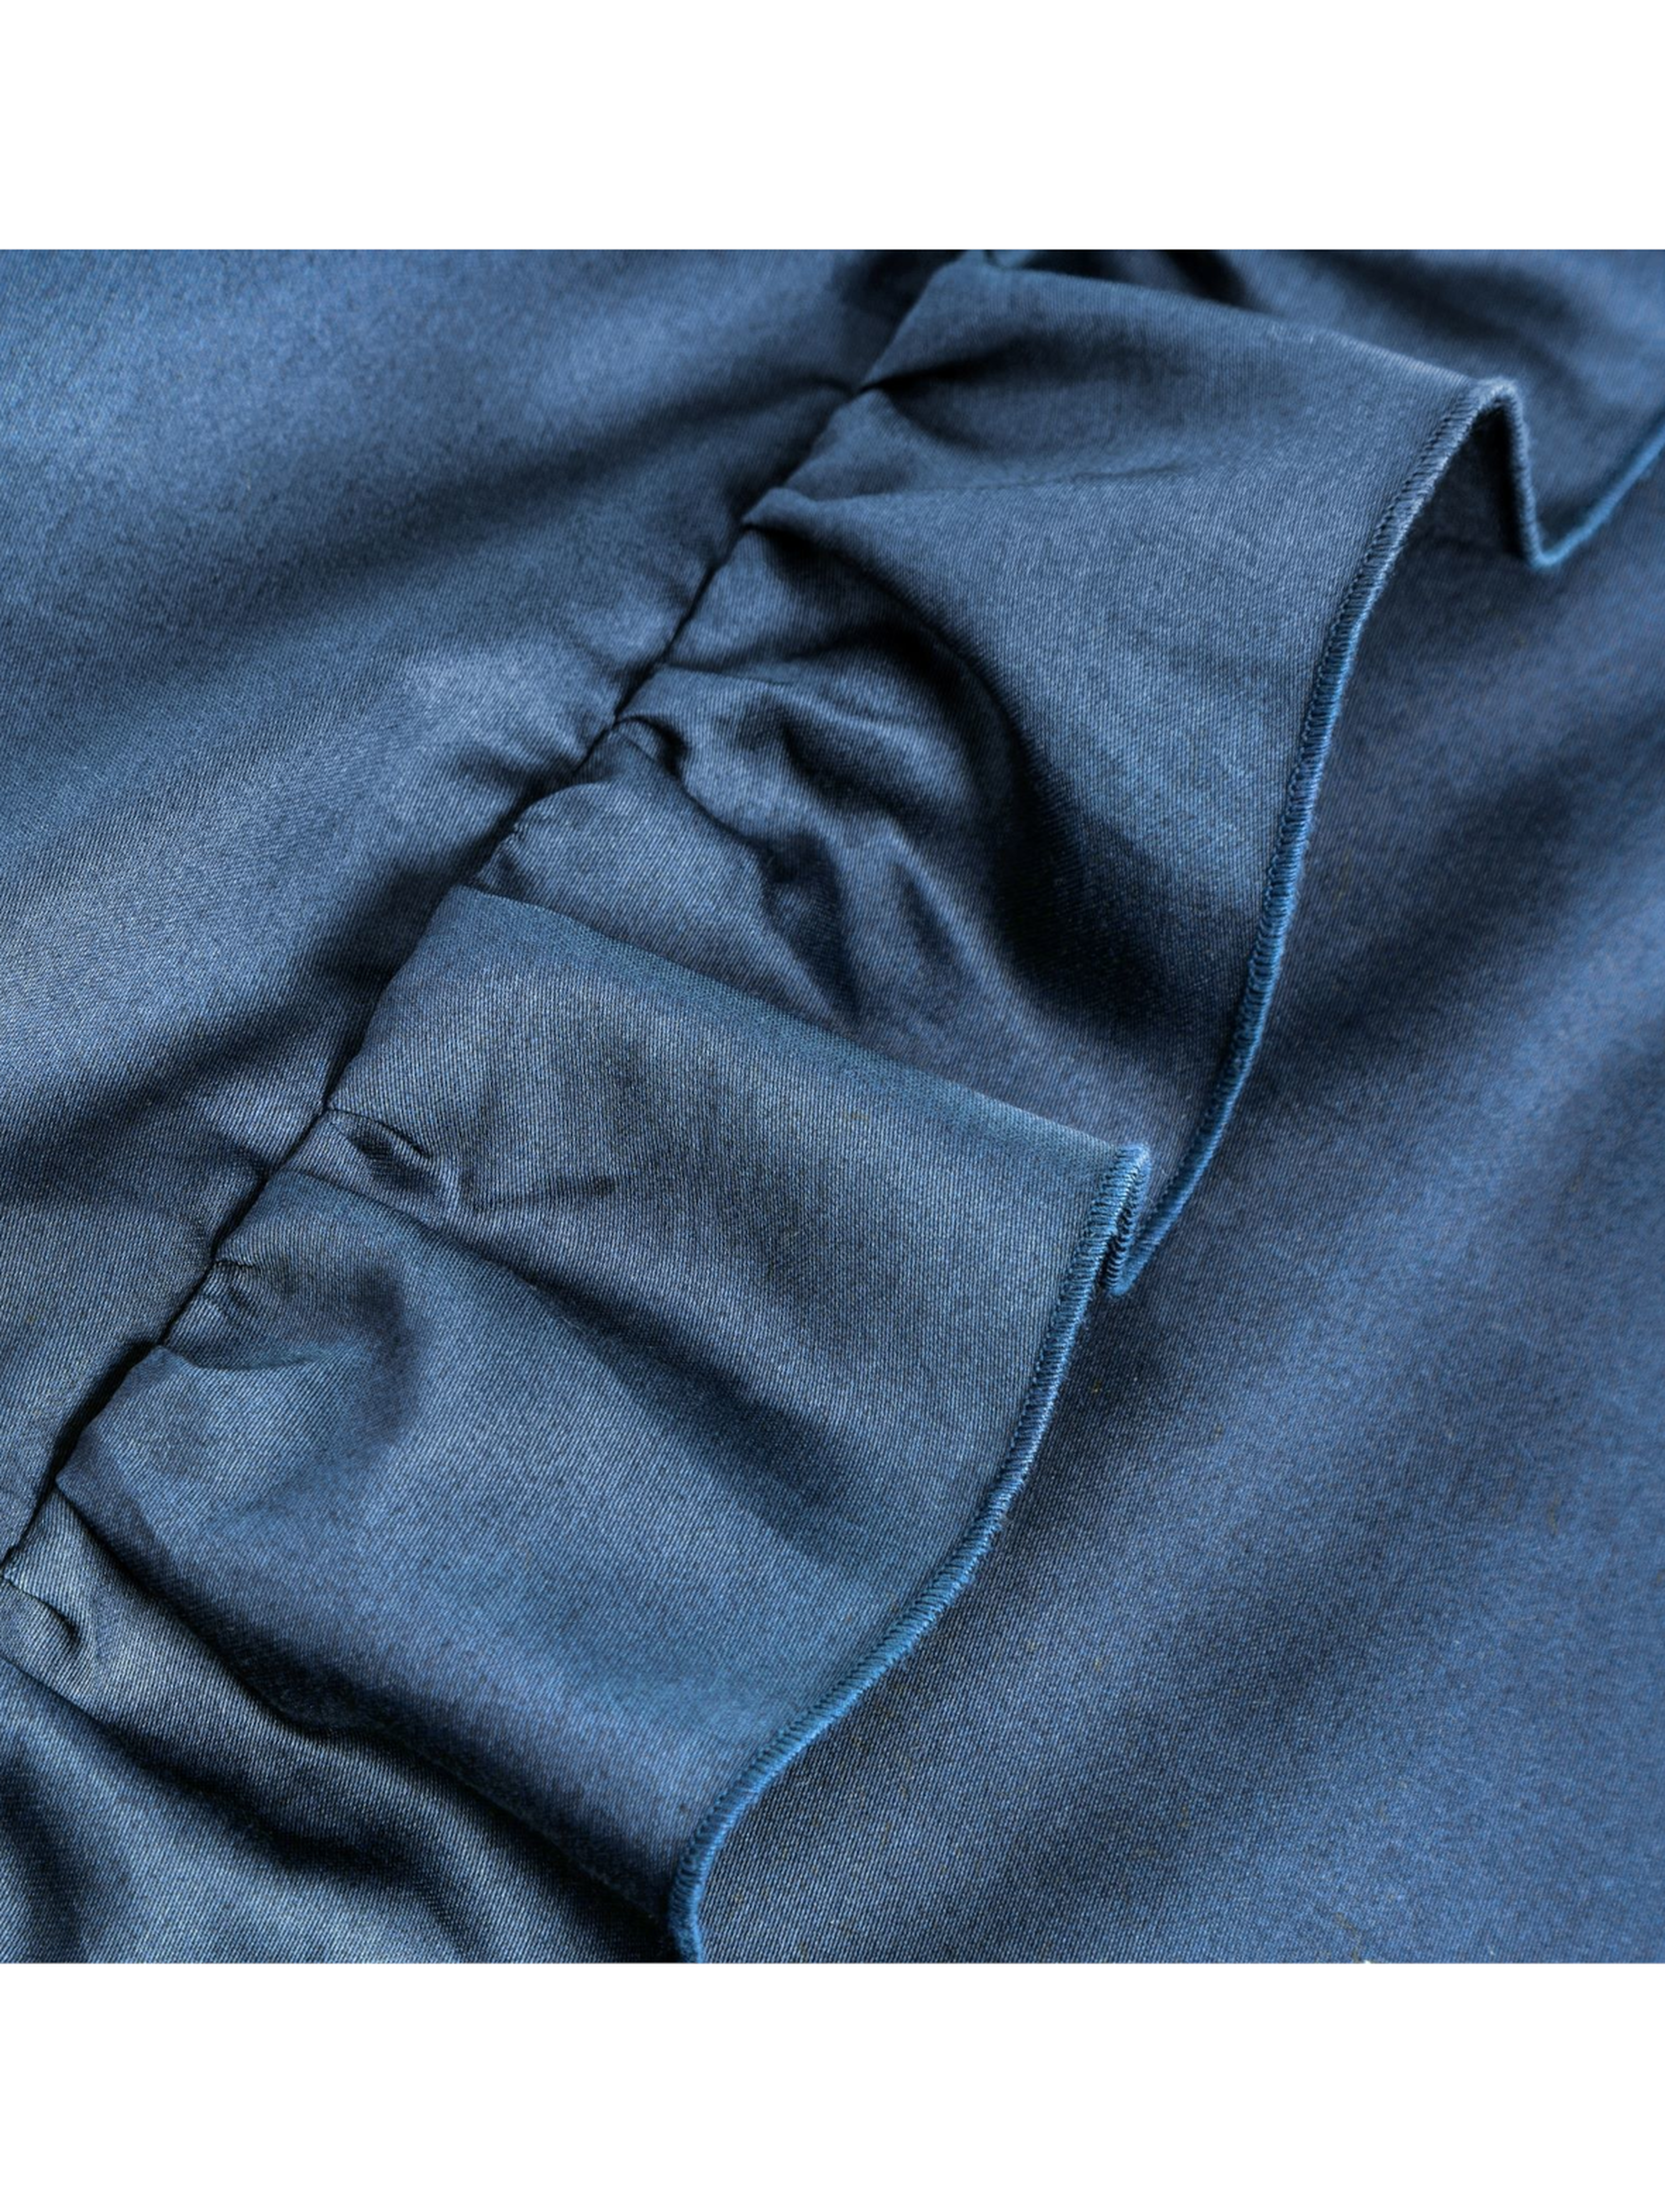 Ciemnoniebieski komplet pościeli satynowej 160x200 cm, 2 szt. 70x80 cm